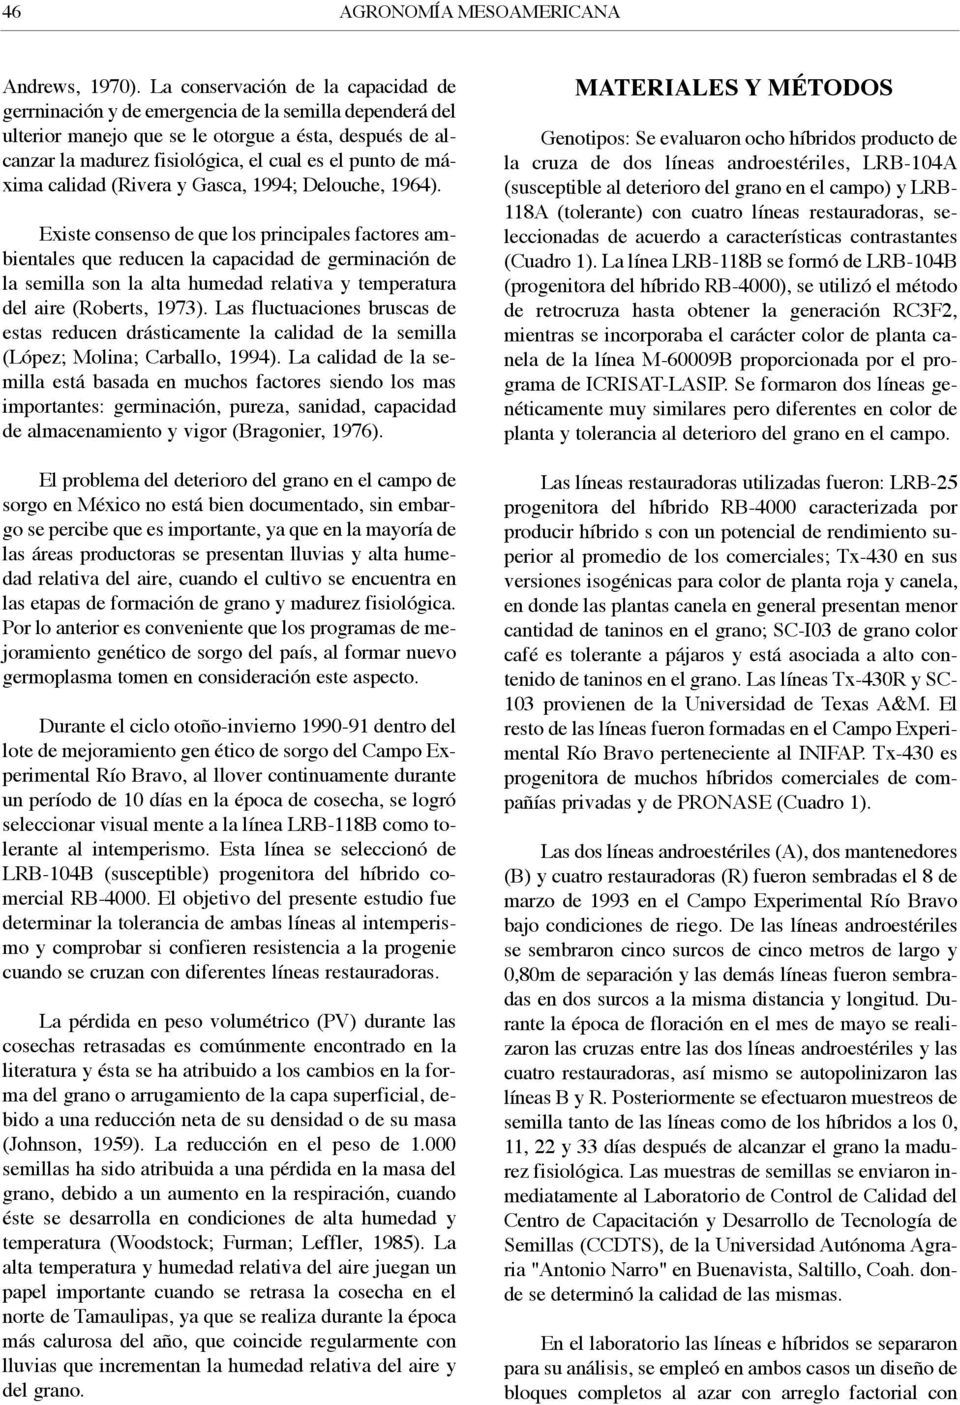 de máxima calidad (Rivera y Gasca, 1994; Delouche, 1964).